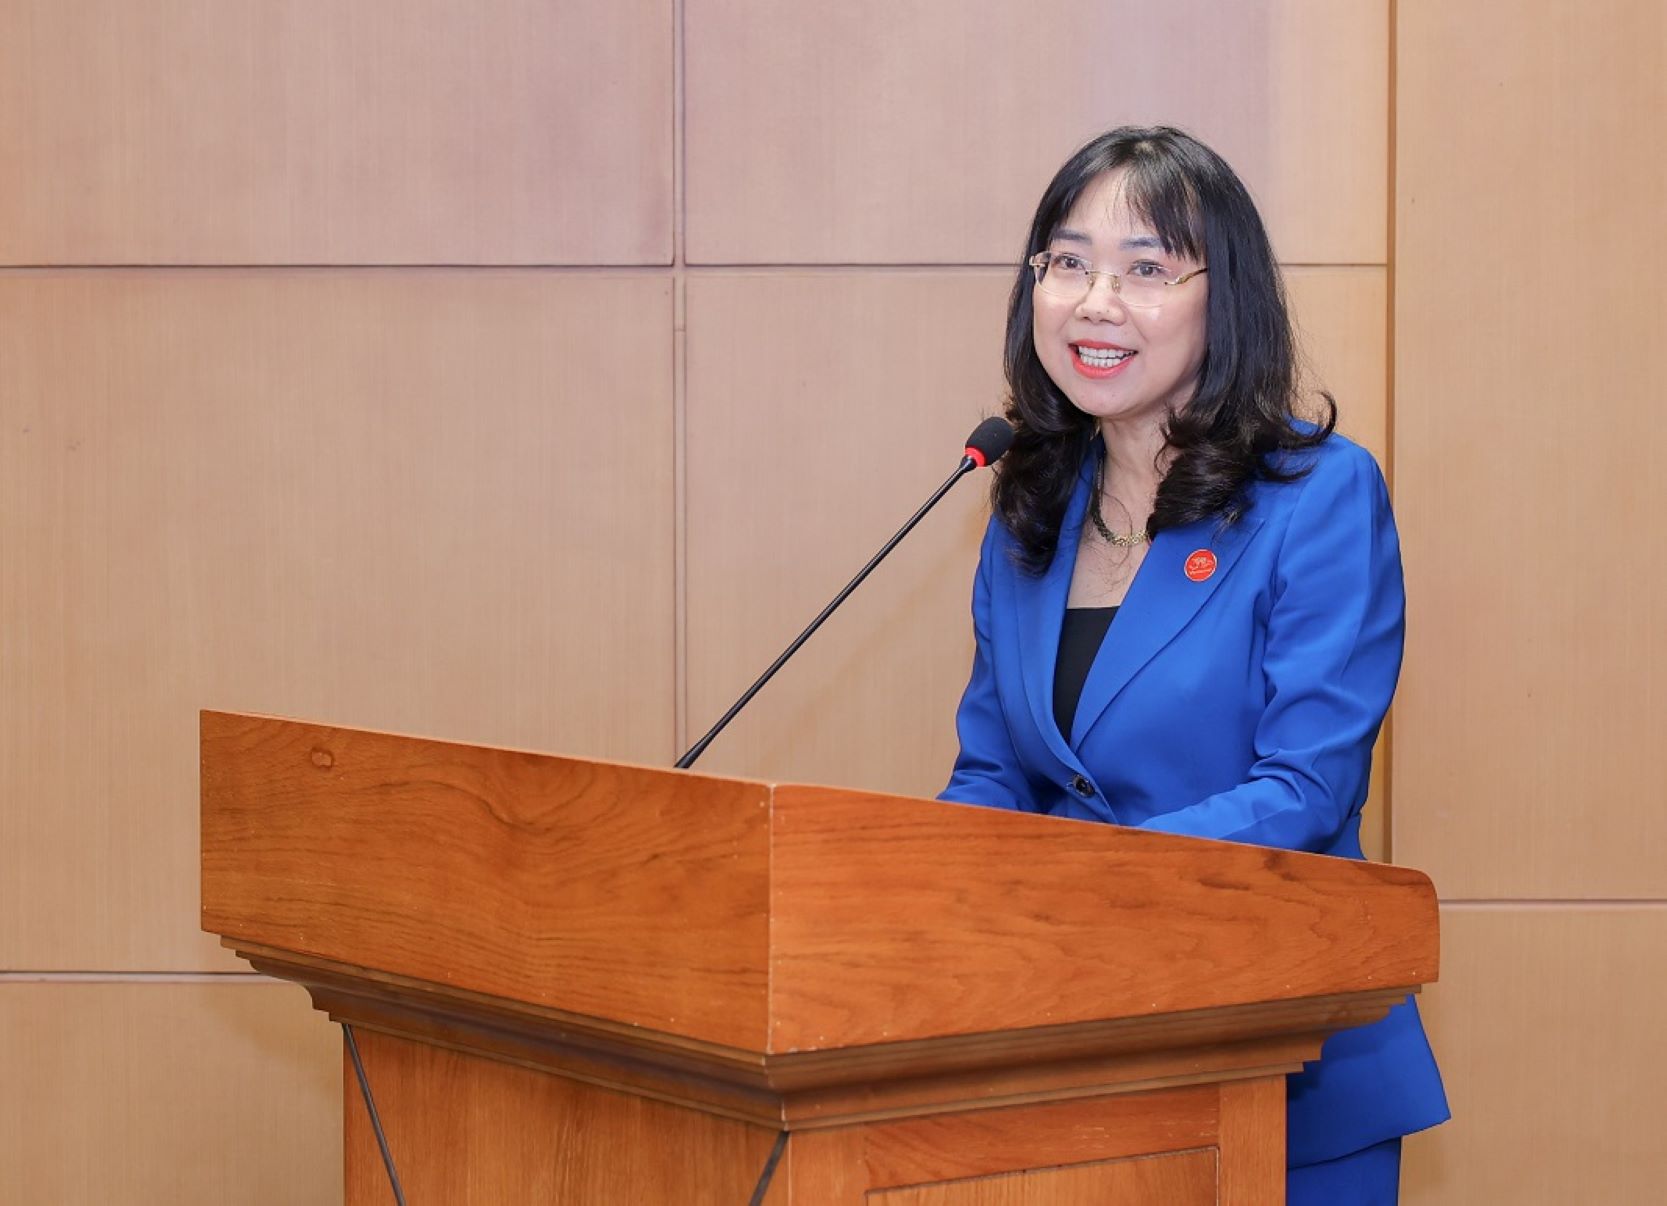 Bà Lê Mai Lan - Phó Chủ tịch Tập đoàn Vingroup kiêm Chủ tịch trường Đại học VinUni phát biểu tại buổi lễ.